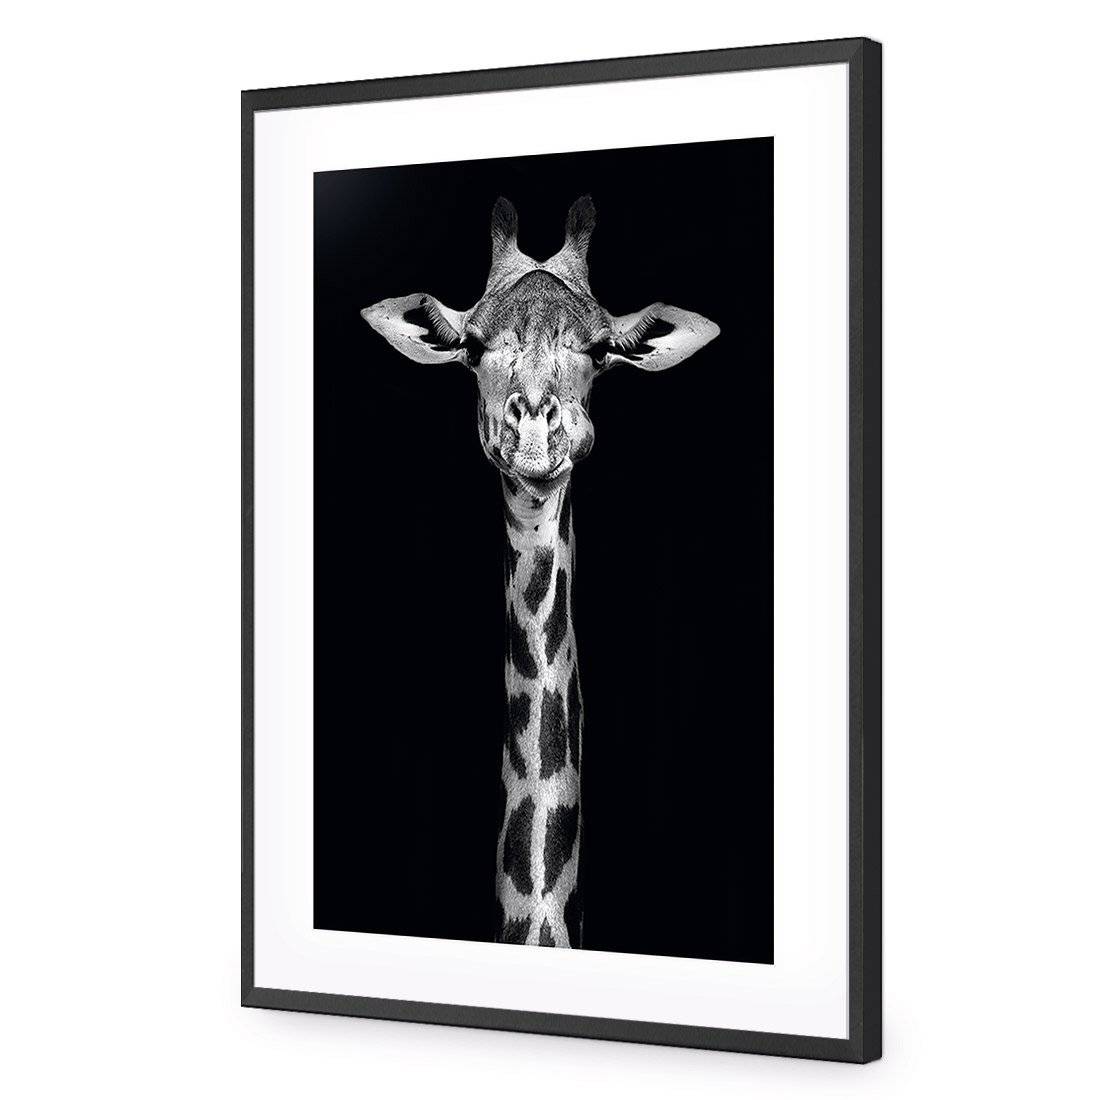 Thornycroft Giraffe-Acrylic-Wall Art Design-With Border-Acrylic - Black Frame-45x30cm-Wall Art Designs